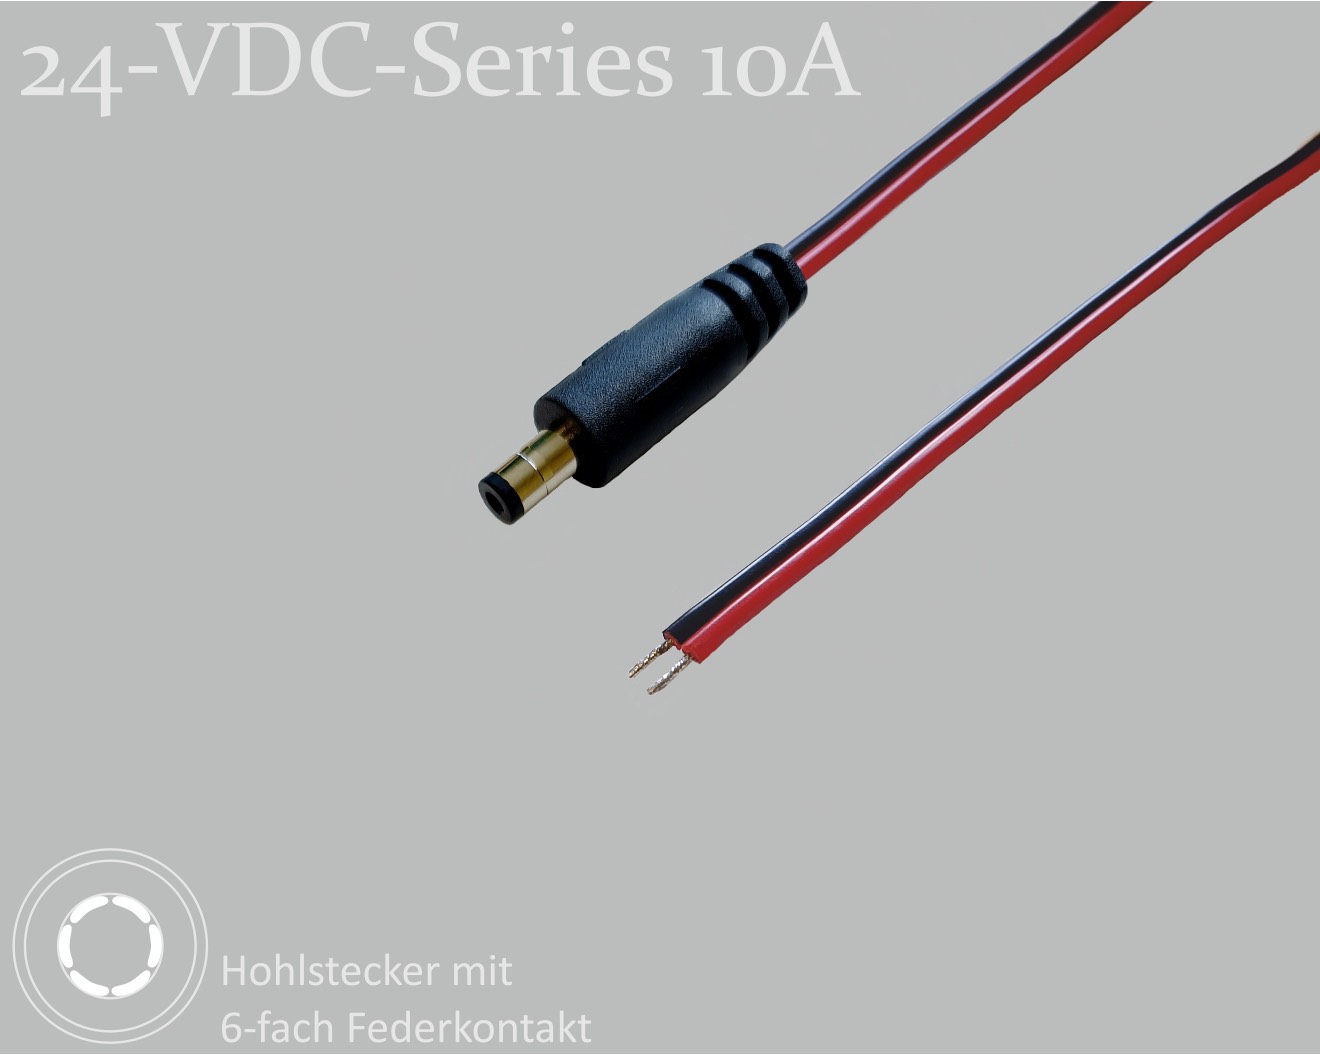 24-VDC-Series 10A, DC-Anschlusskabel, DC-Stecker mit 6-Federkontakt 2,5x5,5x9,5mm, Flachkabel 2x0,75mm², rot/schwarz, verzinnte Enden, 1,5m